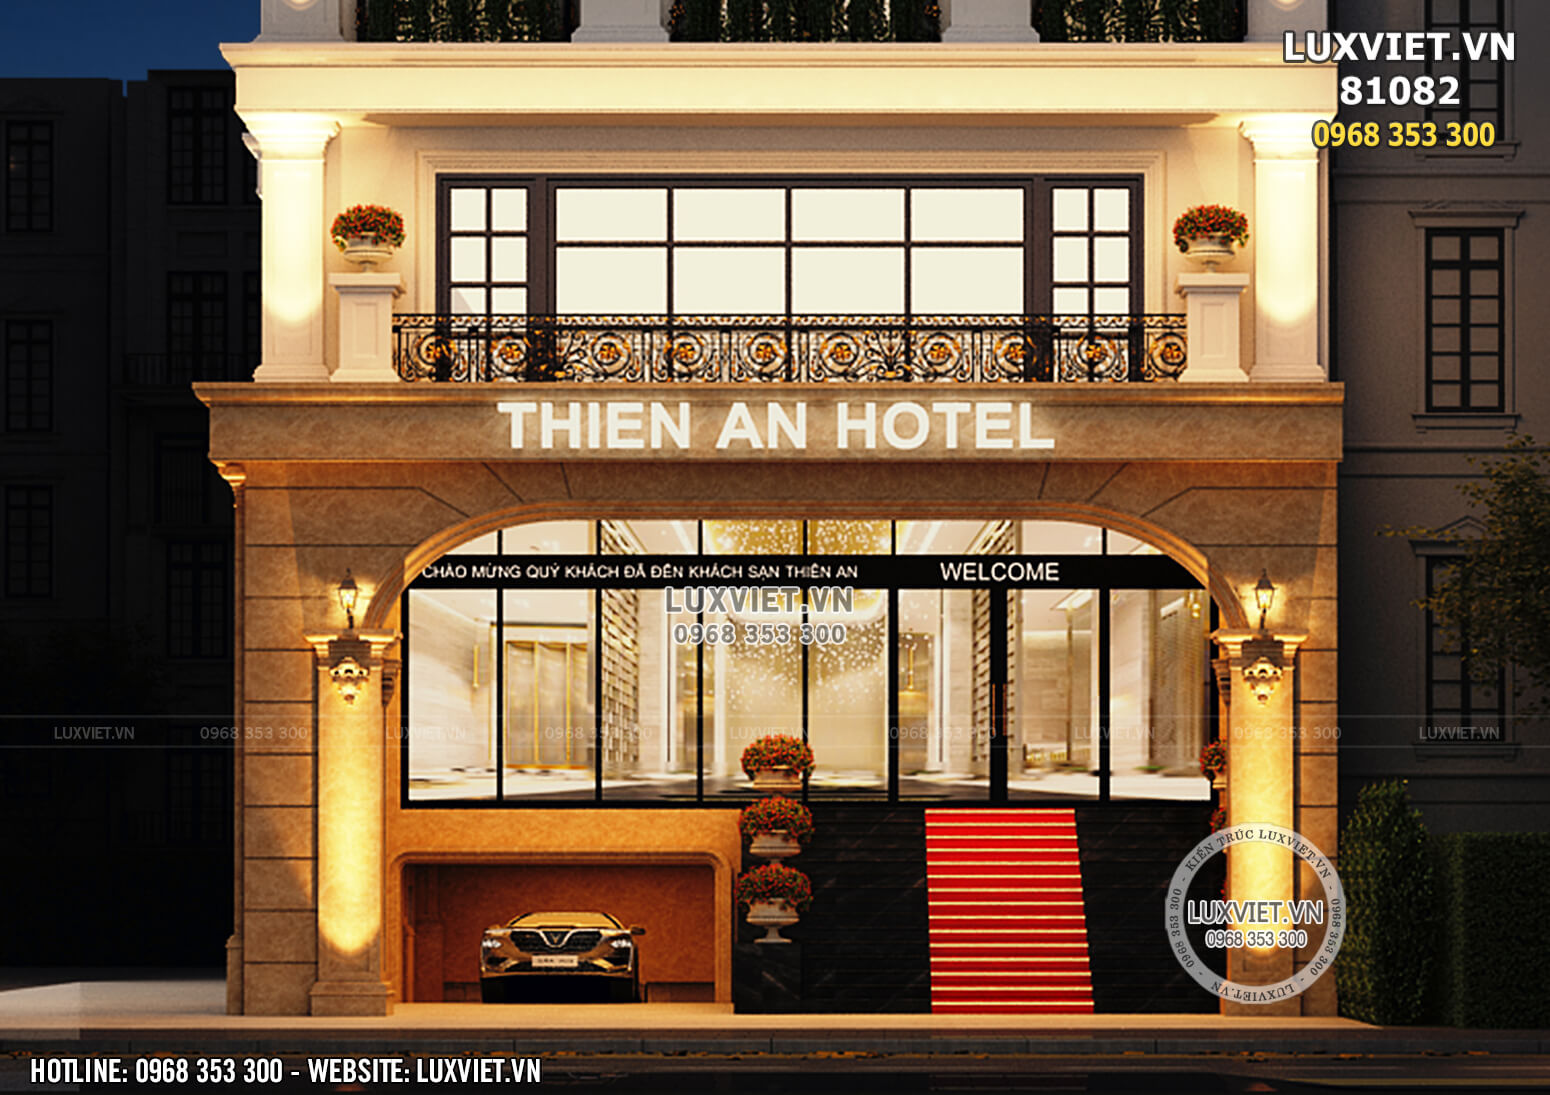 Hình ảnh: Cận cảnh mặt tiền khách sạn 3 sao theo kiến trúc Pháp - LV 81082